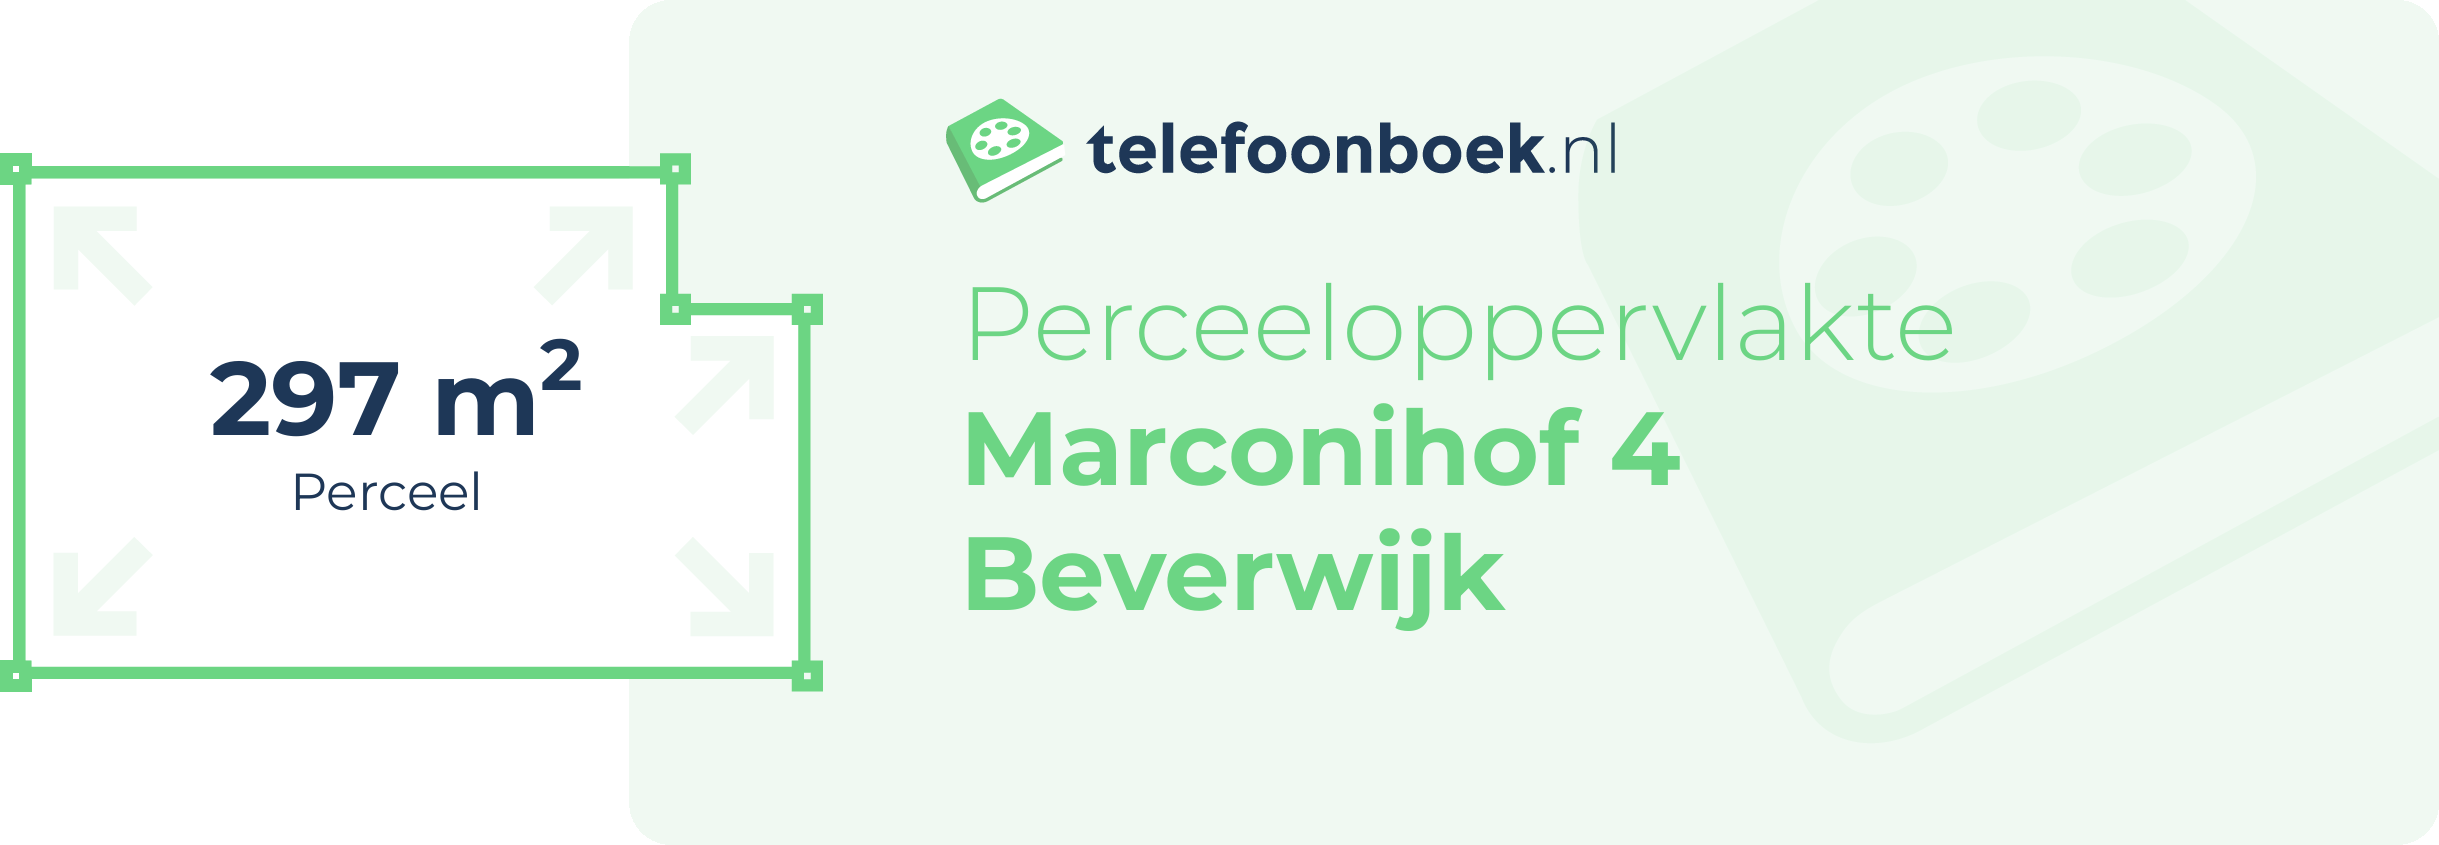 Perceeloppervlakte Marconihof 4 Beverwijk